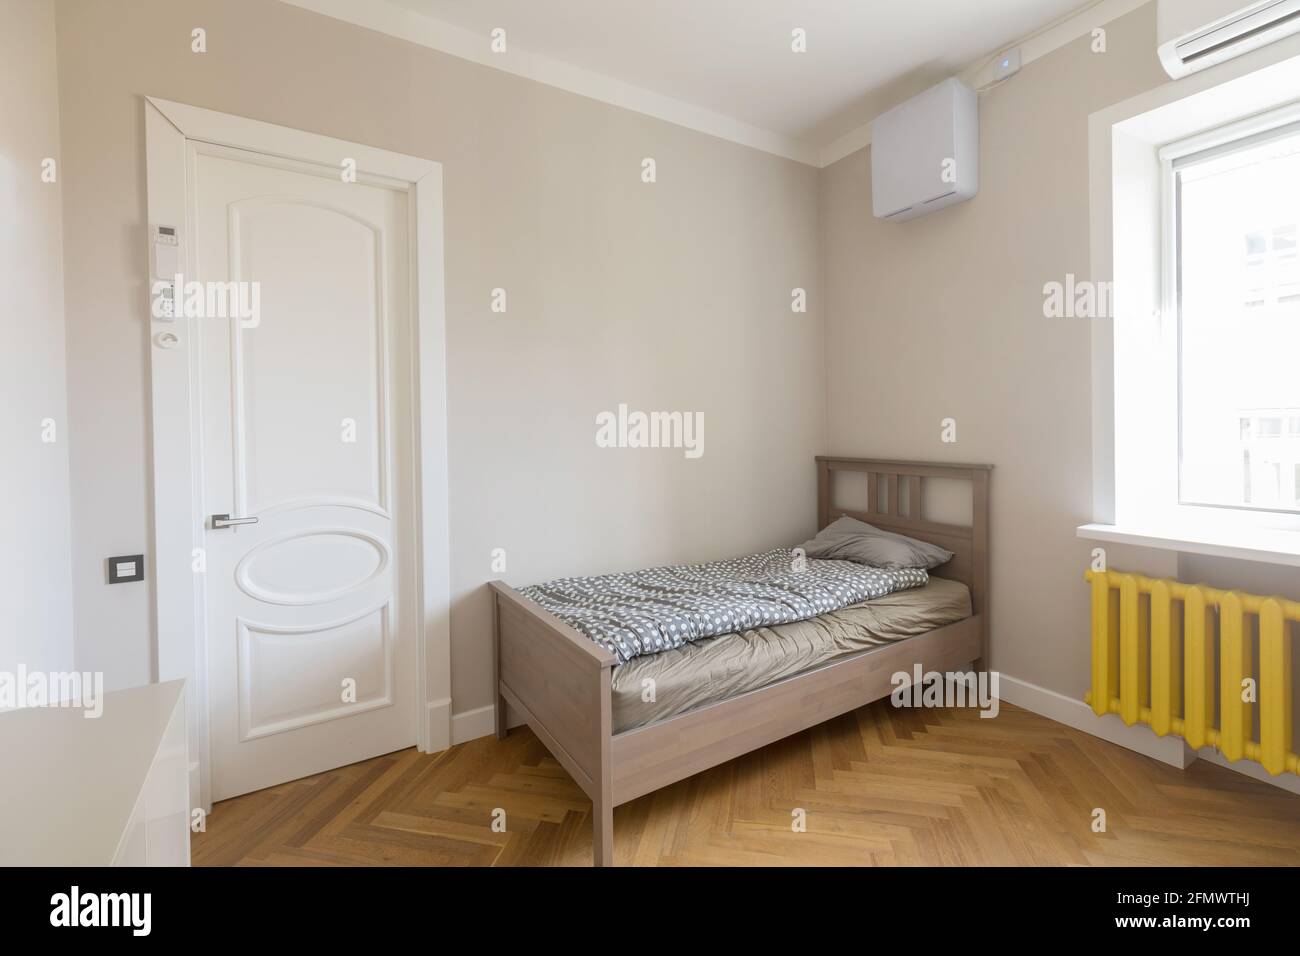 Interni dallo stile minimalista di una camera da letto moderna e luminosa con legno letto singolo posto in angolo tra porta e finestra con radiatore giallo Foto Stock